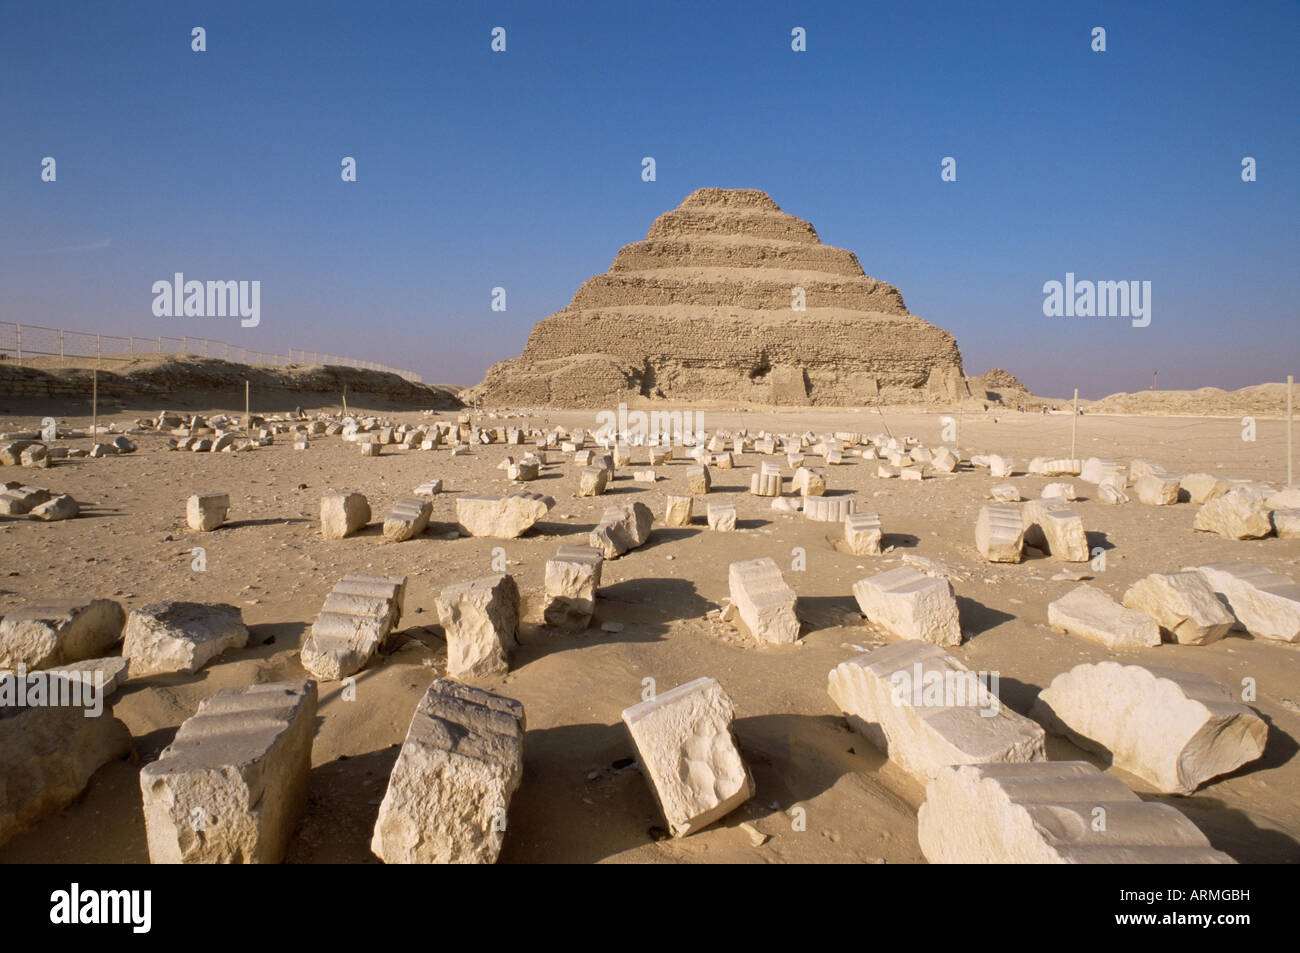 La pyramide de Saqqarah (épaulement, Sakkara), UNESCO World Heritage Site, Égypte, Afrique du Nord, Afrique Banque D'Images